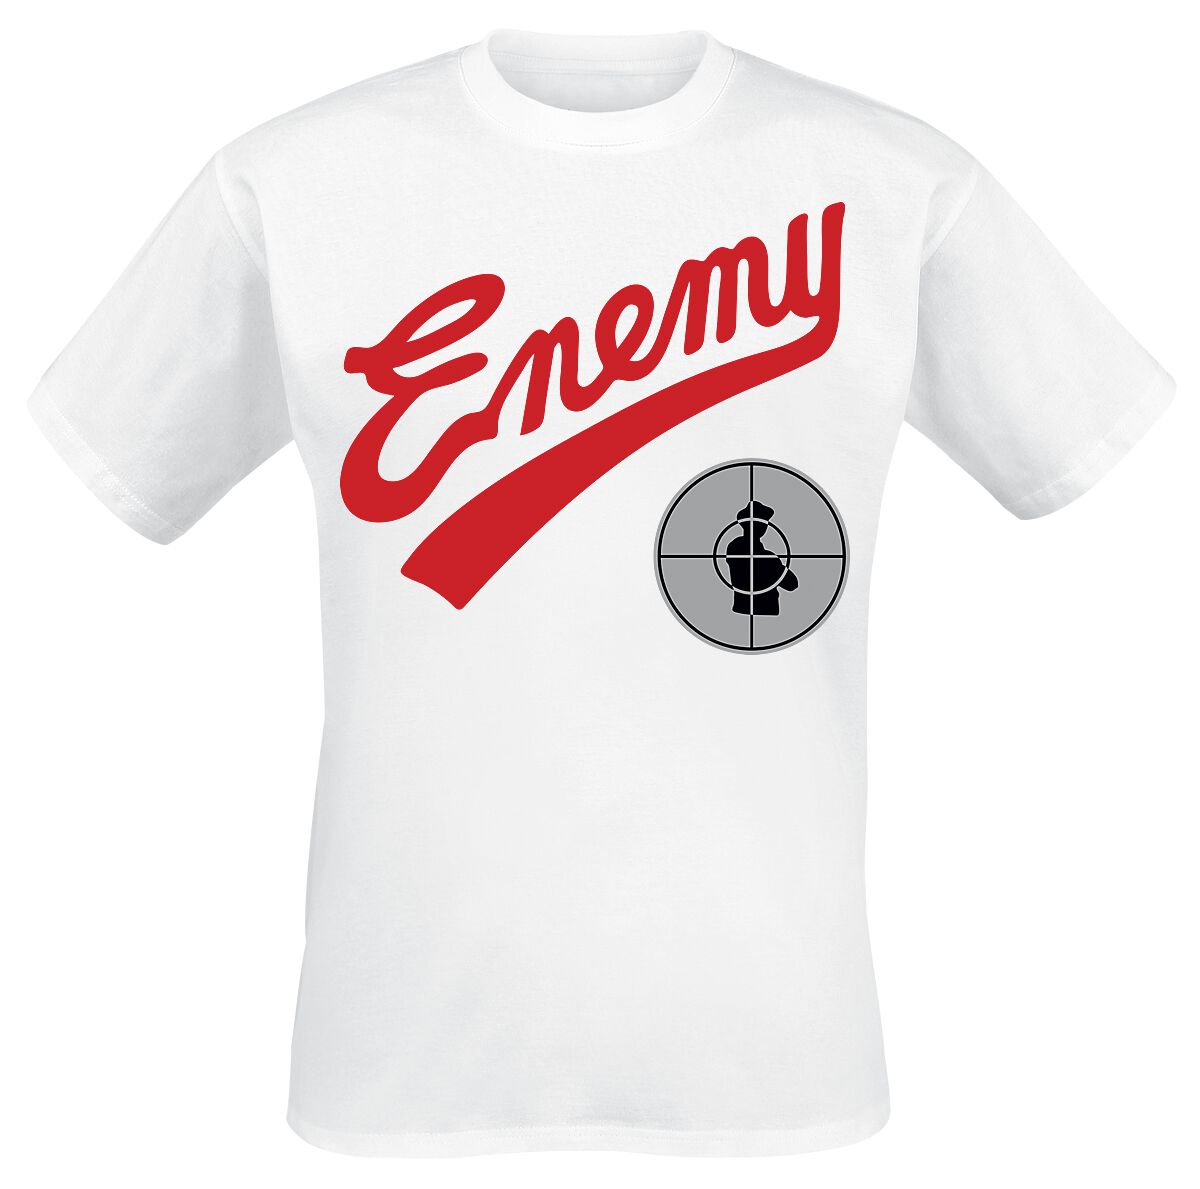 Public Enemy T-Shirt - Enemy Target - S bis M - für Männer - Größe M - weiß  - Lizenziertes Merchandise!